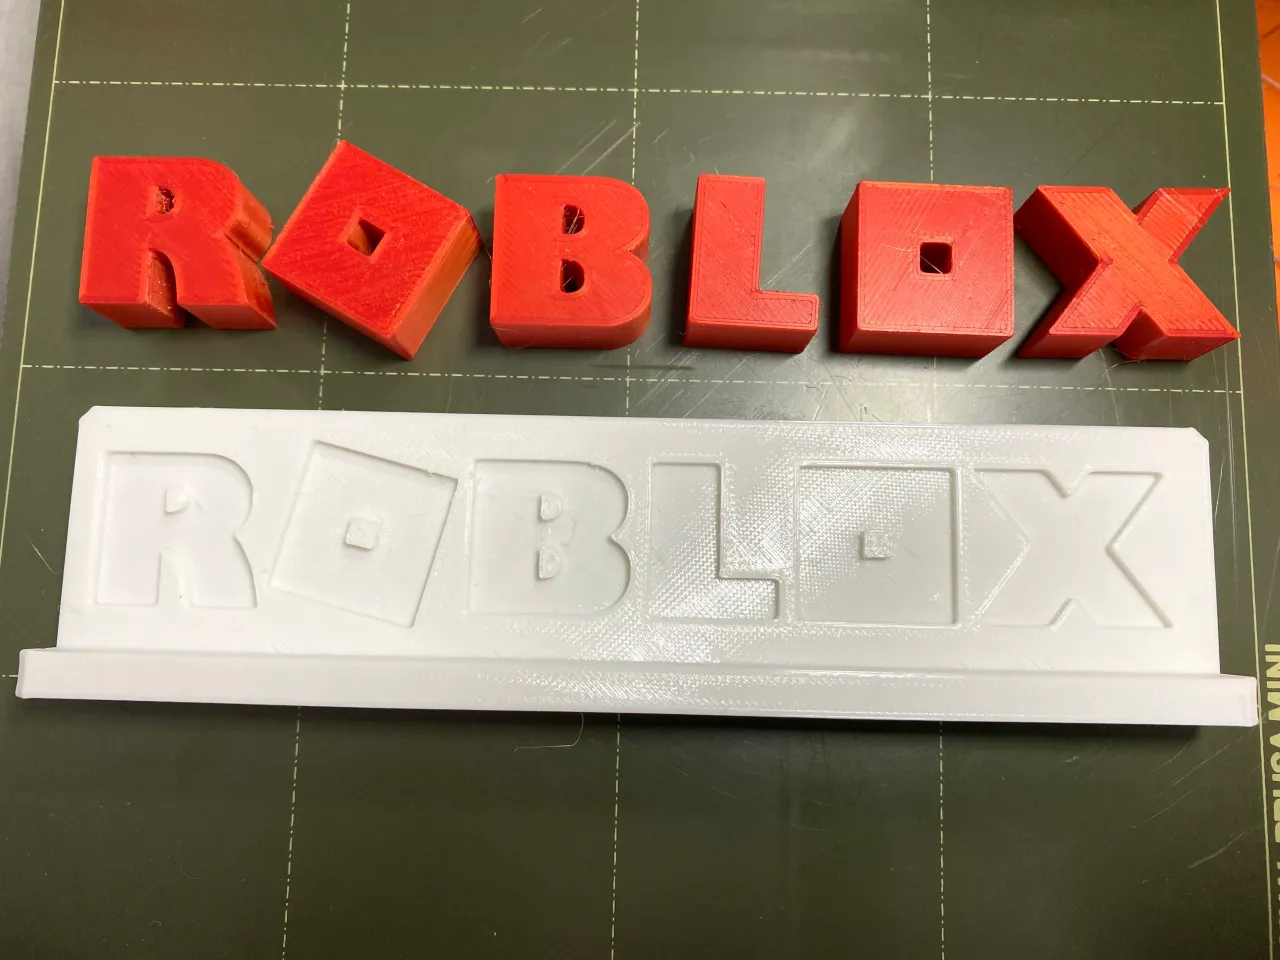 The 3D Logos RP! - Roblox